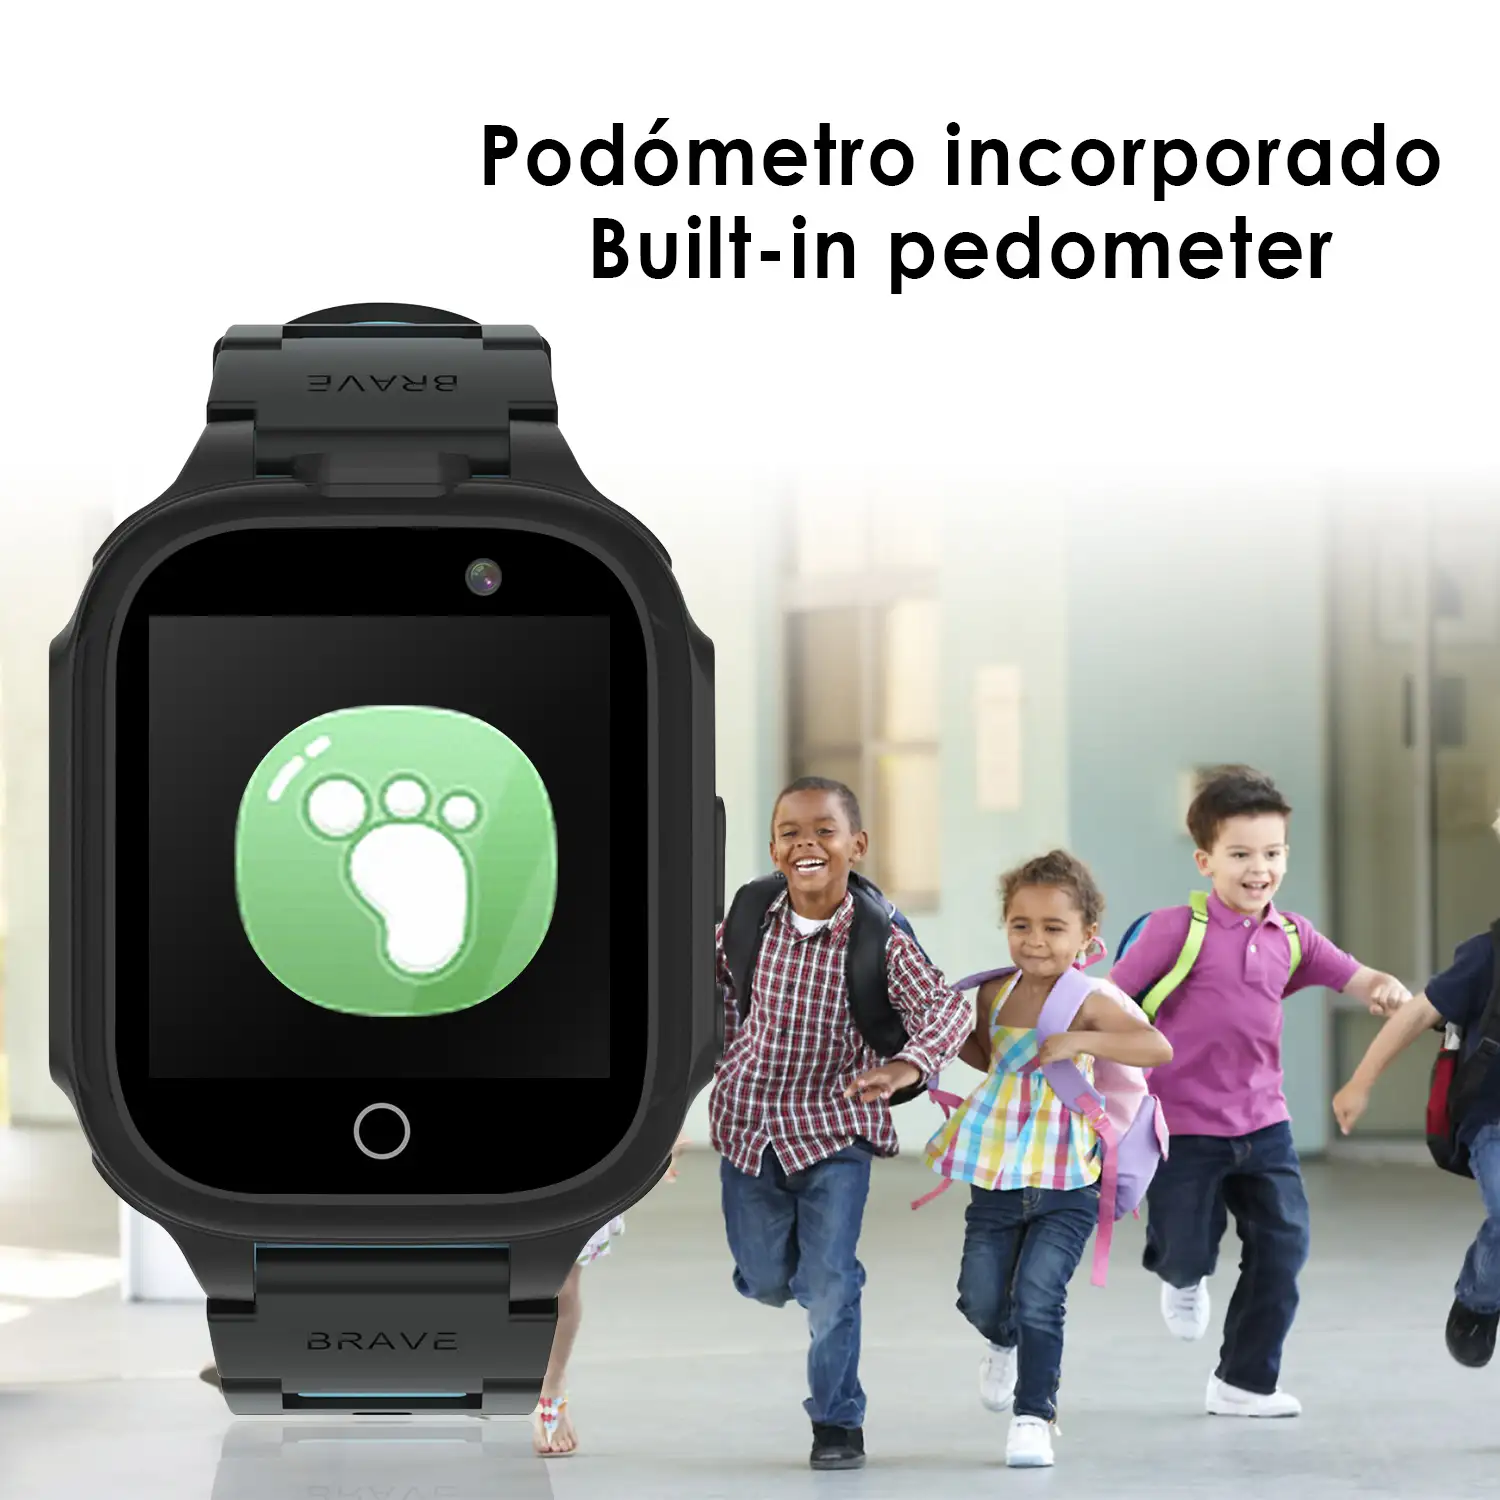 Smartwatch infantil S23 gaming watch, con 14 juegos, doble cámara de fotos y video.